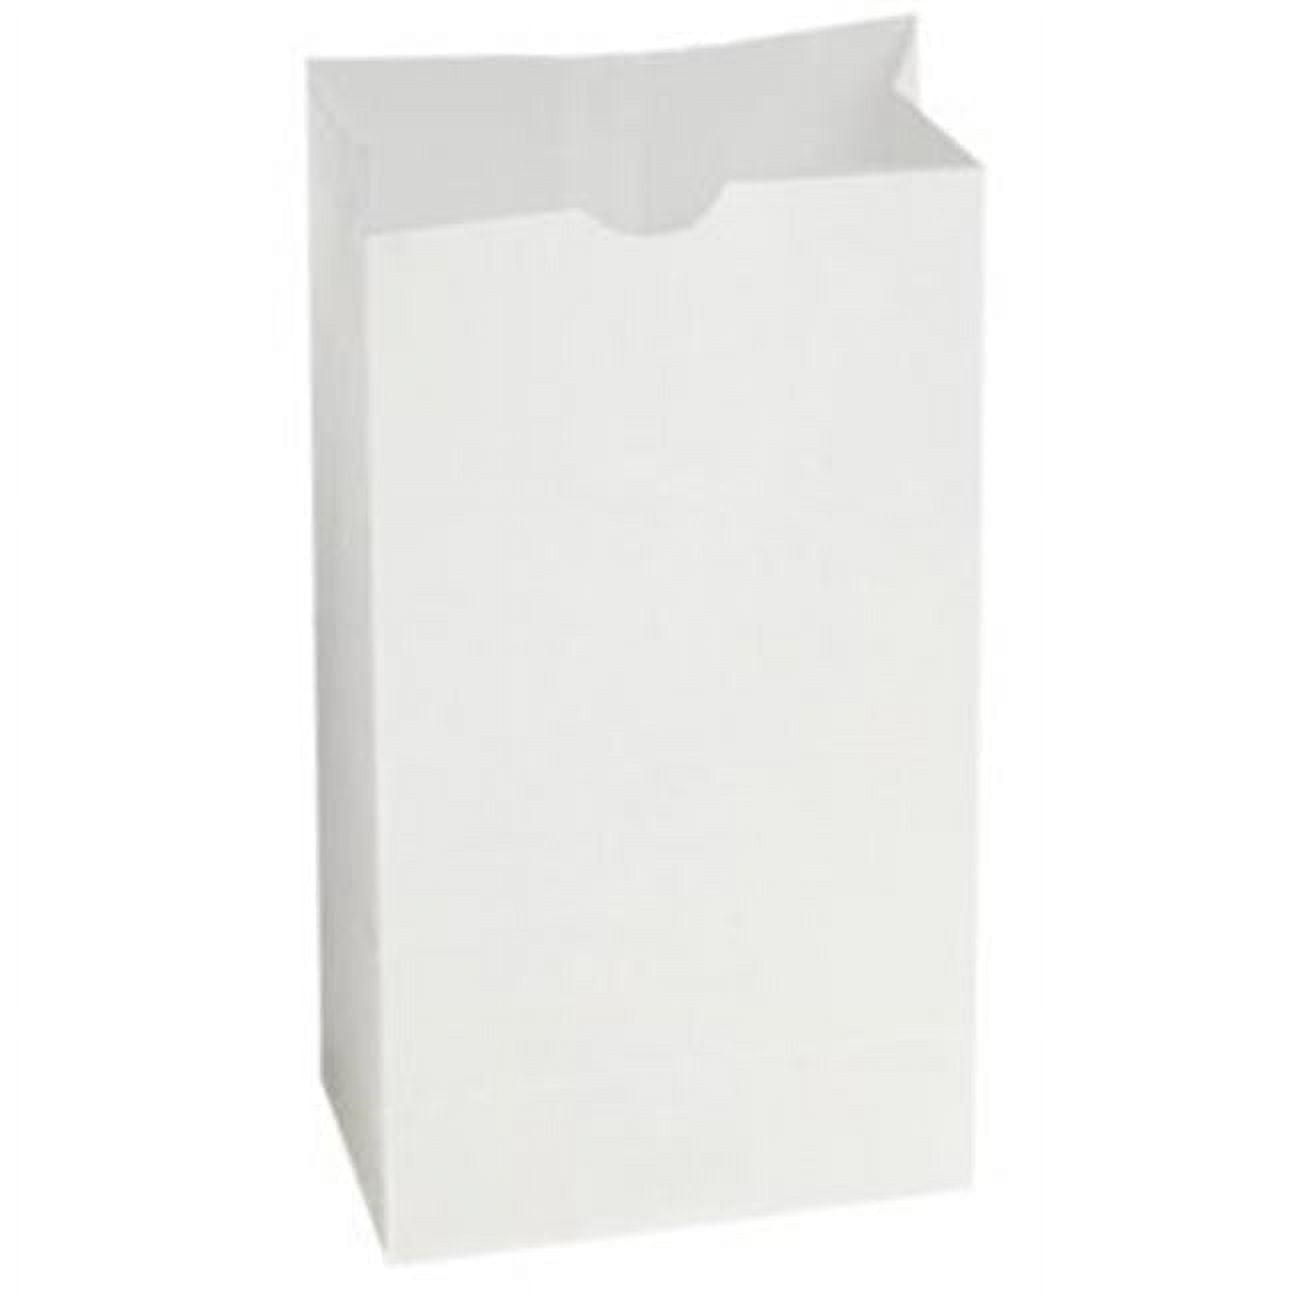 Grocery Bag Dubl Wax, White - 6 Lb